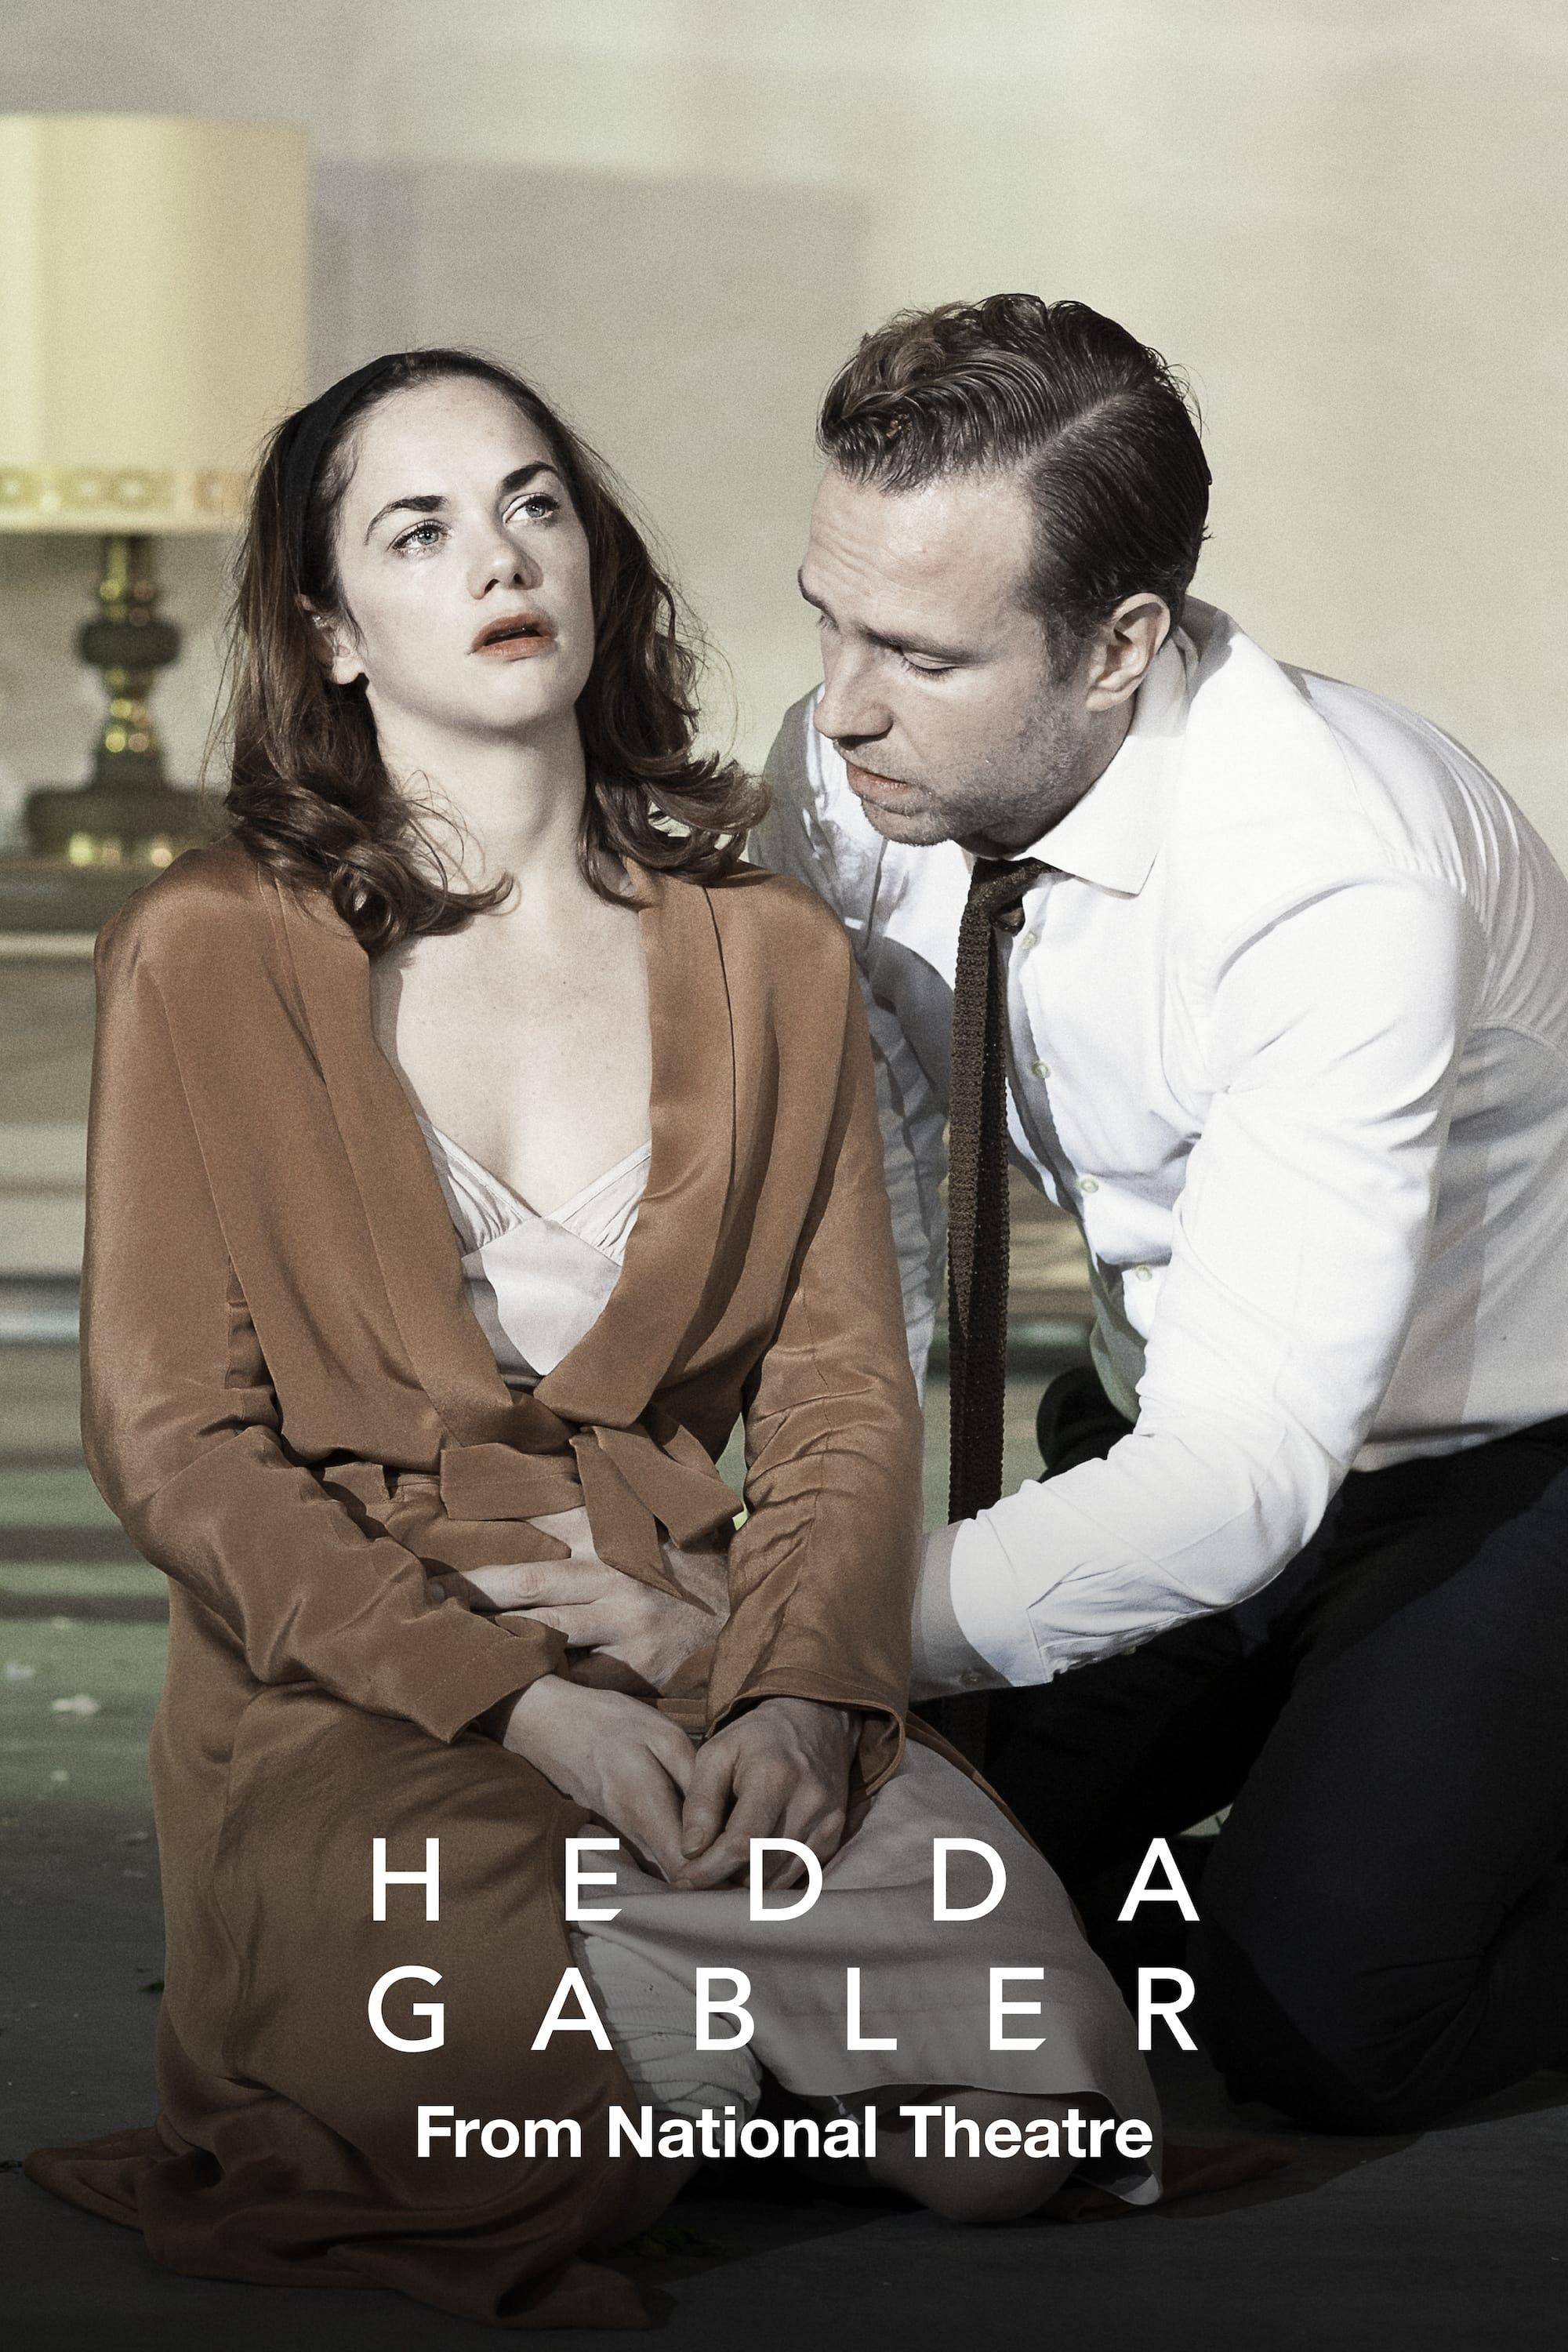 National Theatre Live: Hedda Gabler poster